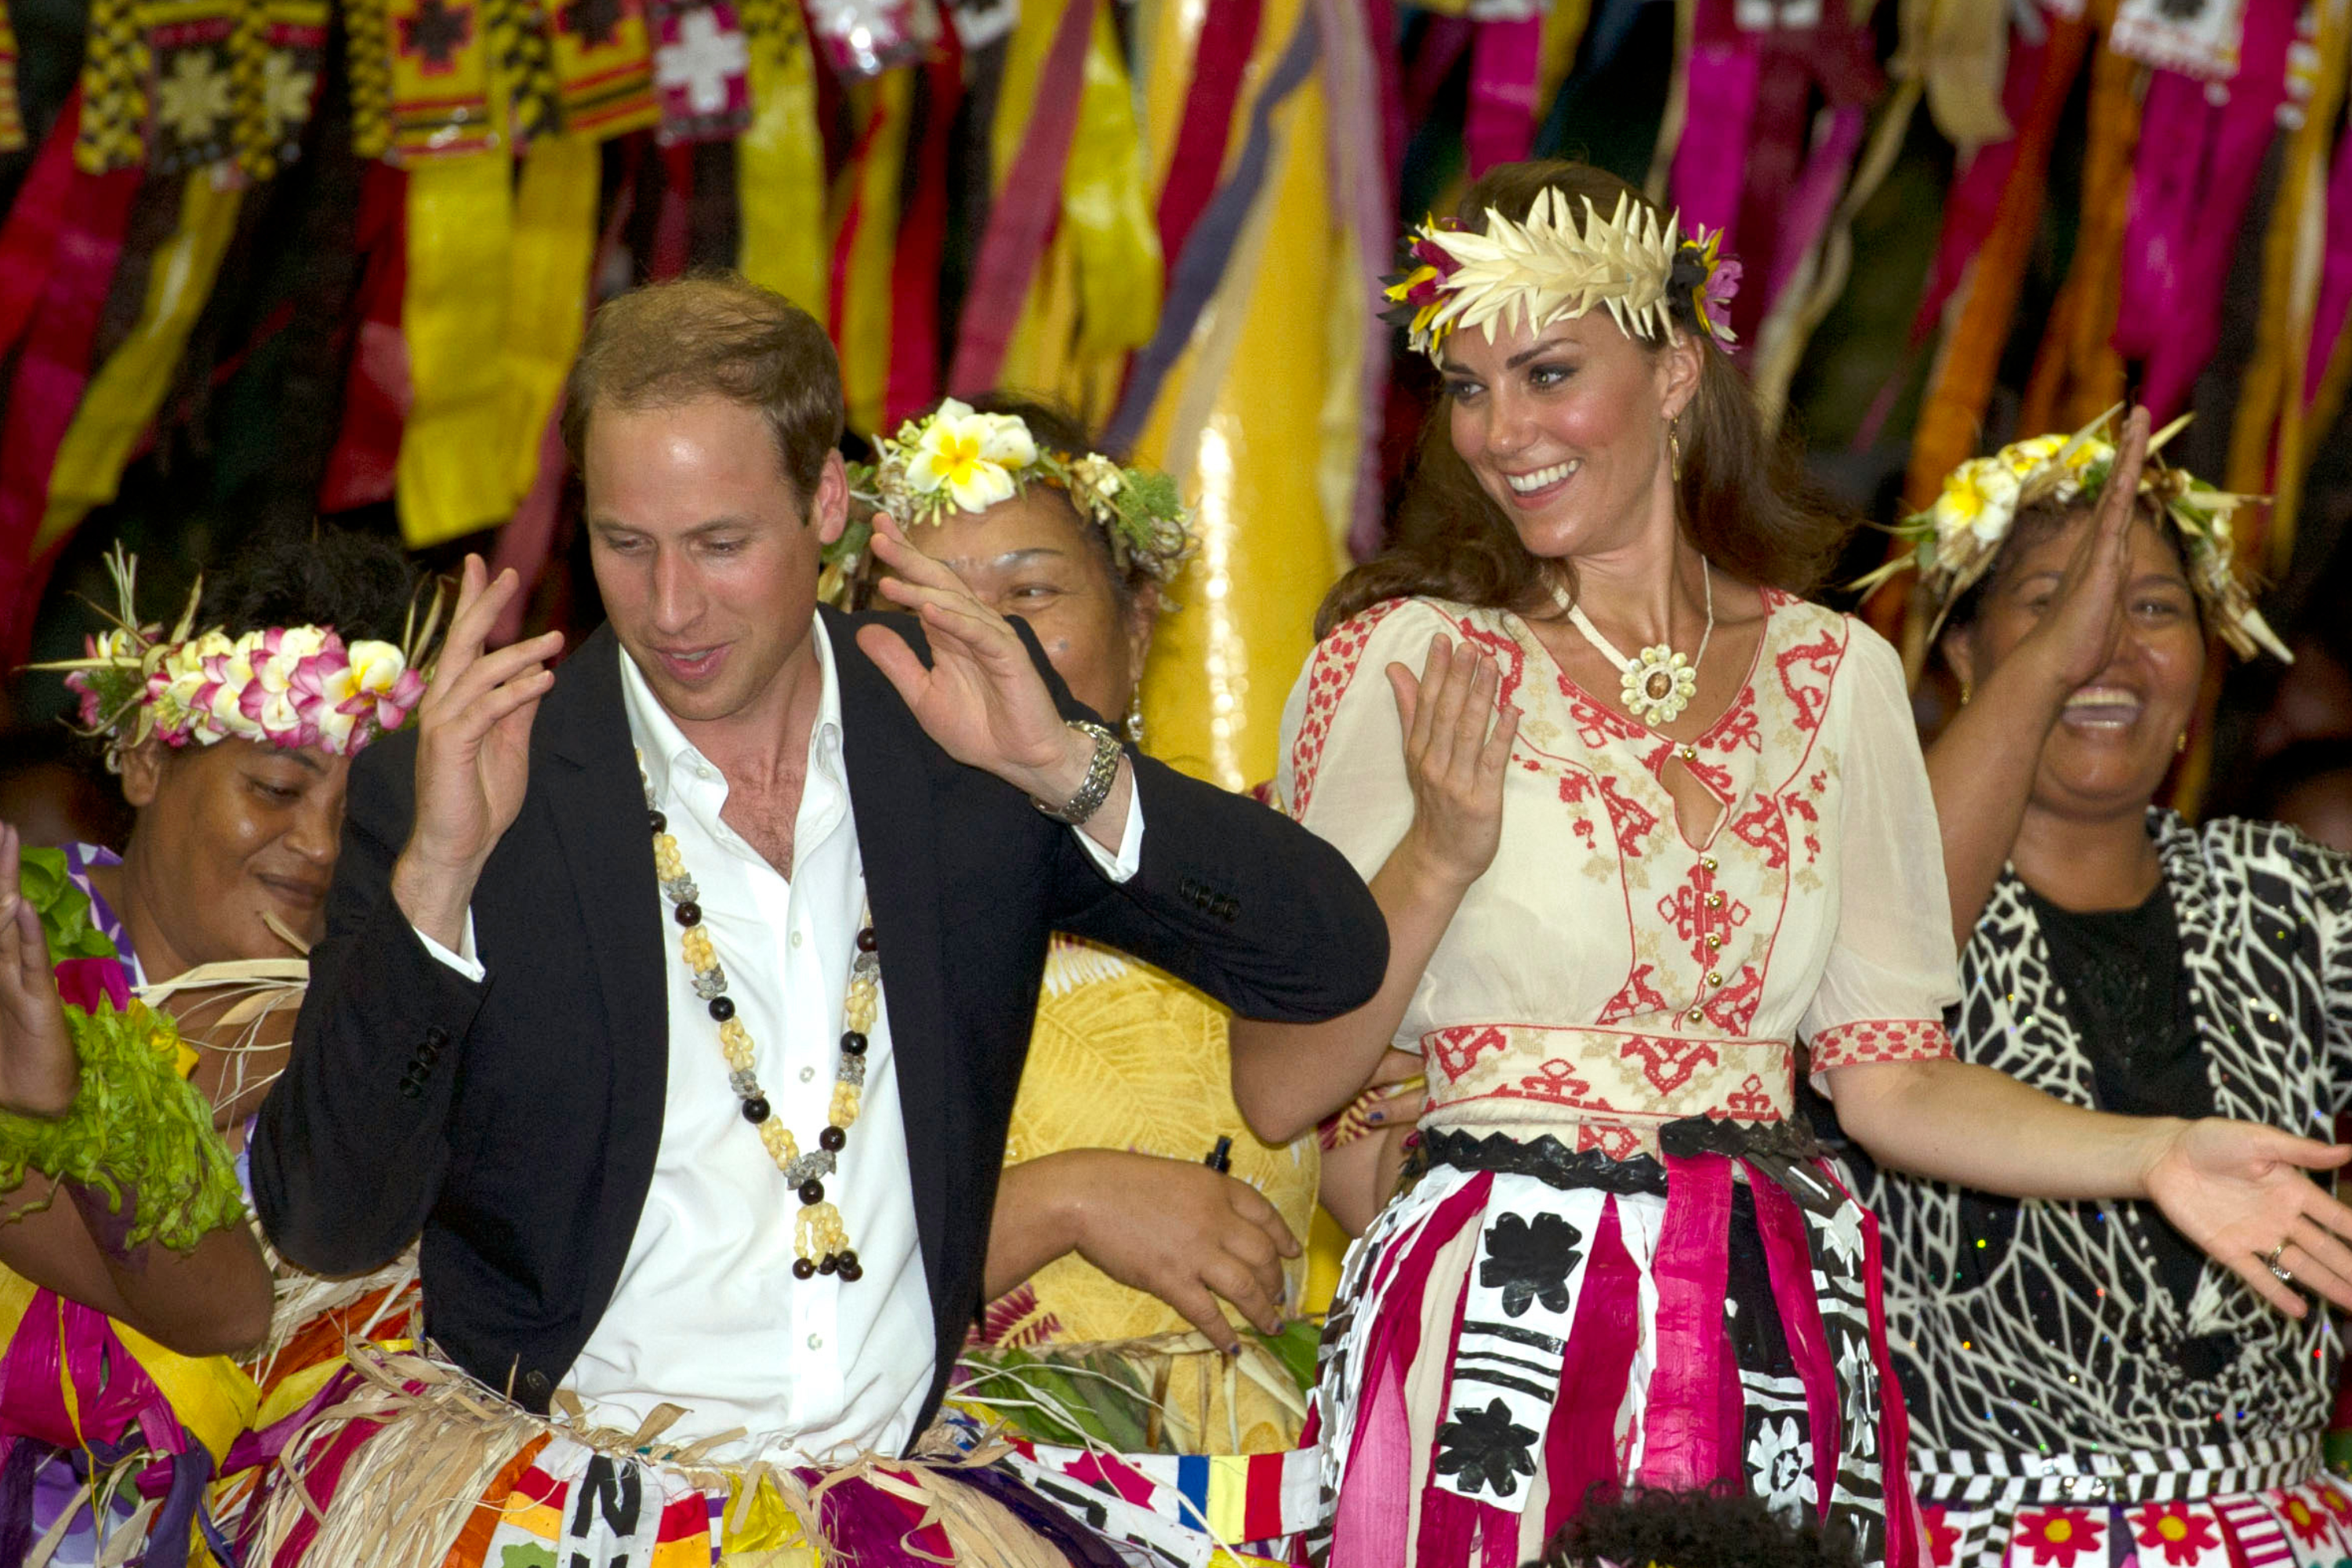 La danse « insensée » du prince William devient virale